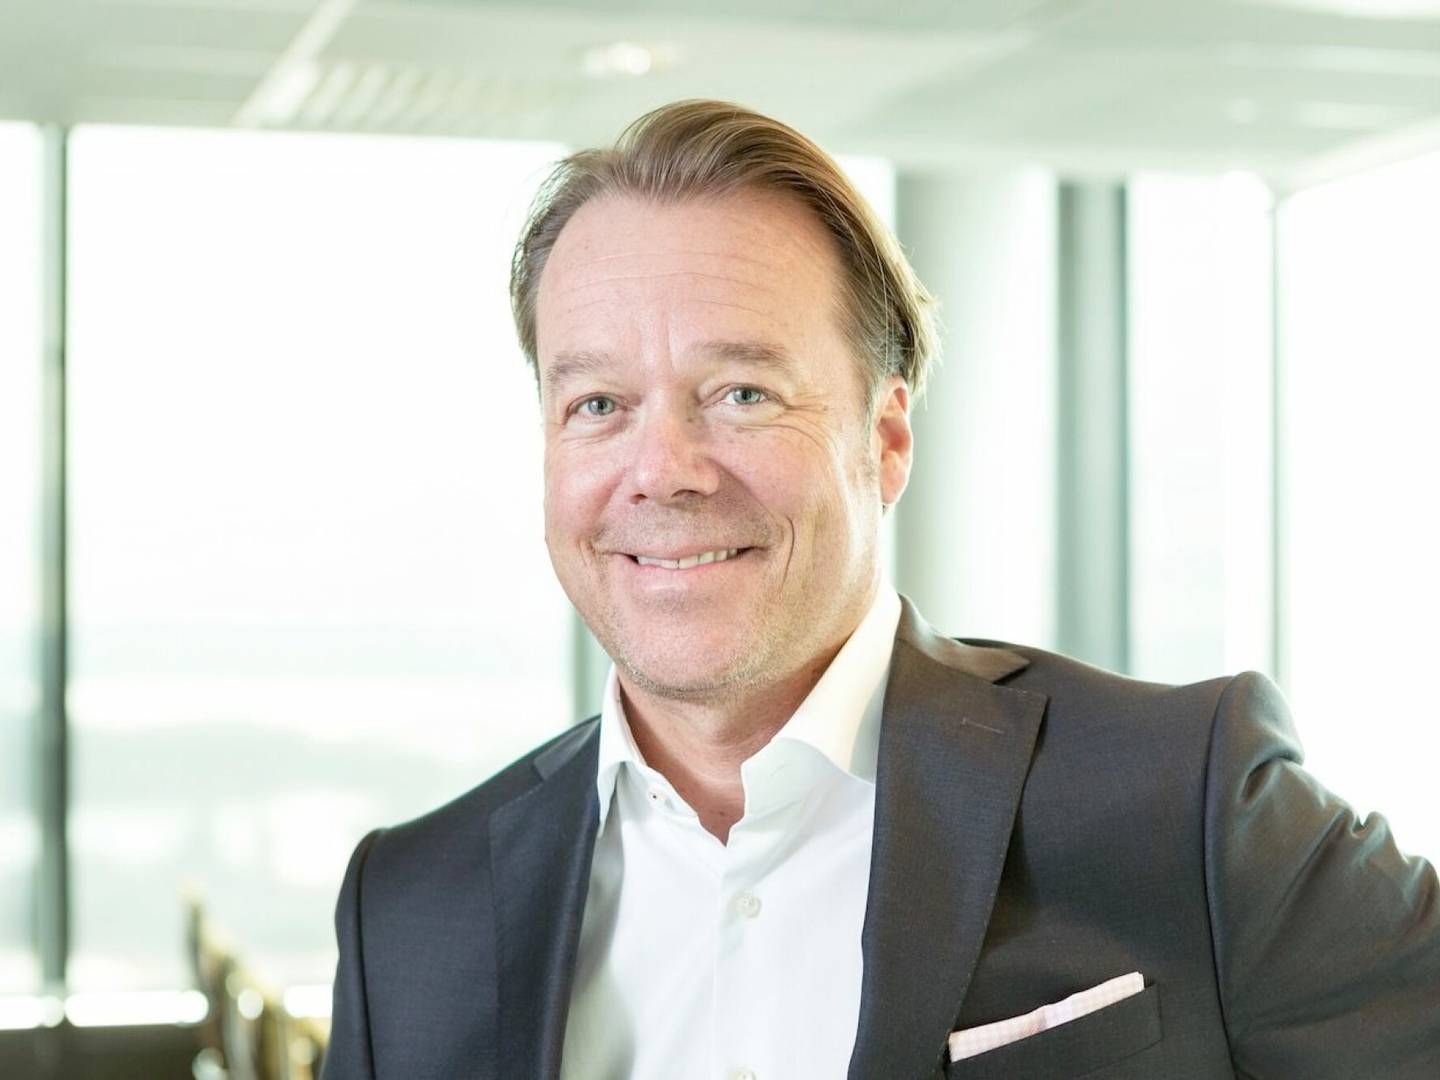 VIL IKKE SELGE: Henrik Melder, sjef for SBB i Norge | Foto: Hemfosa